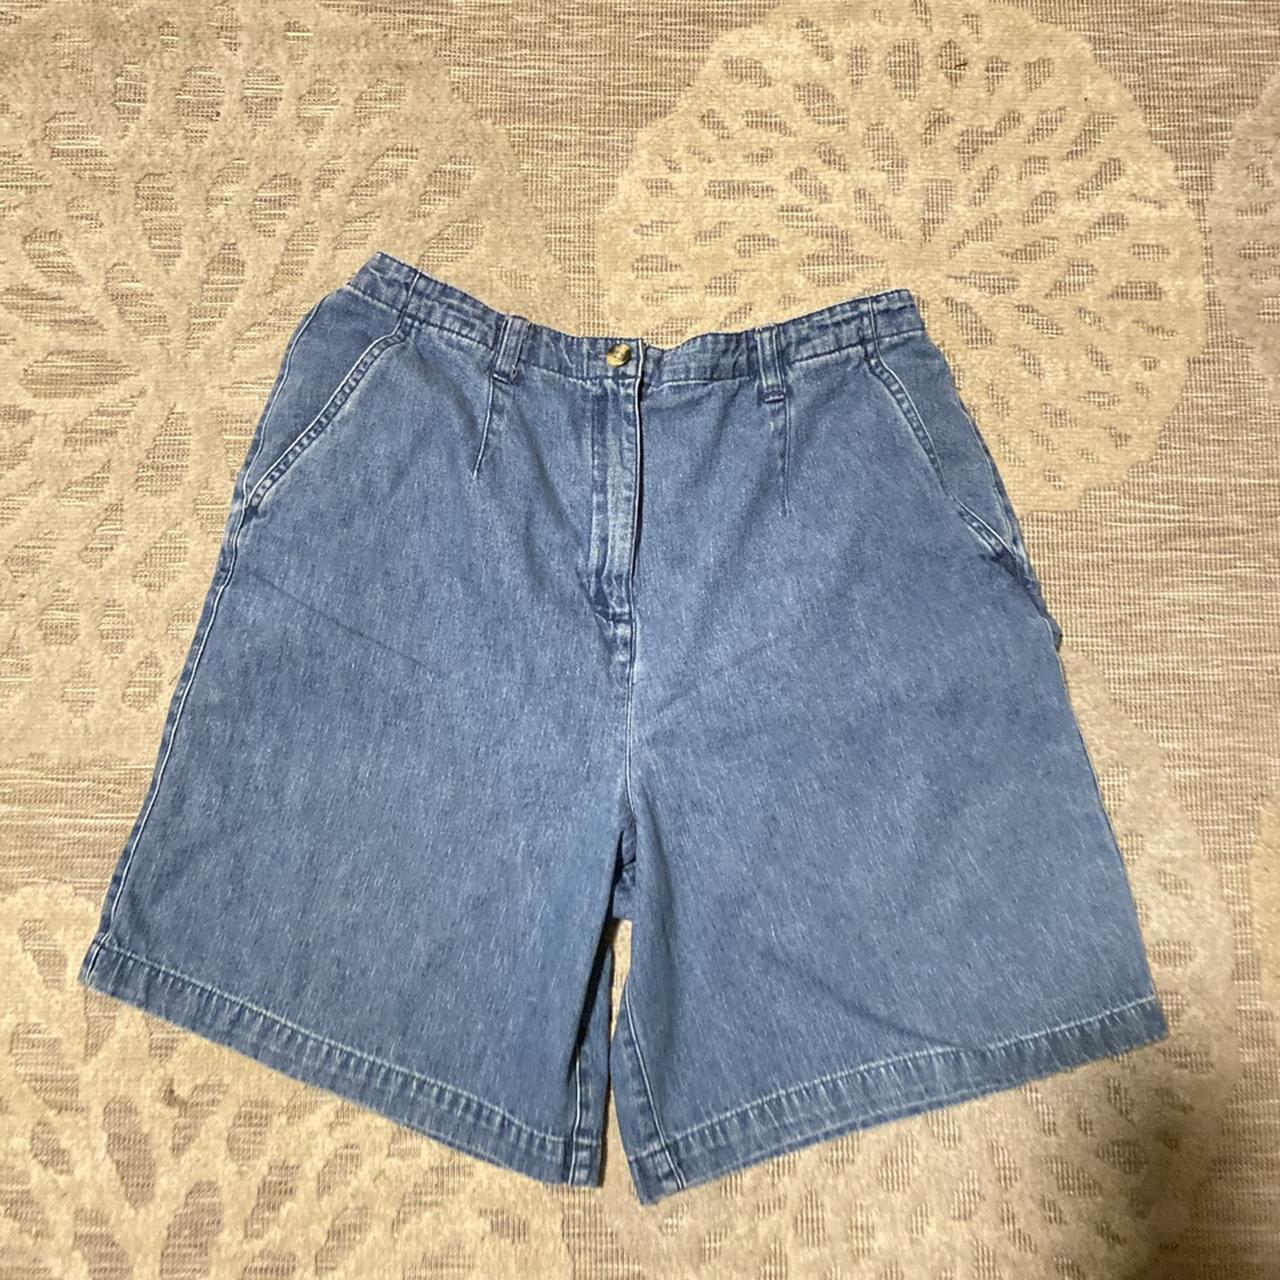 Vintage Karen Scott Denim Shorts! Size 10 Inseam... - Depop